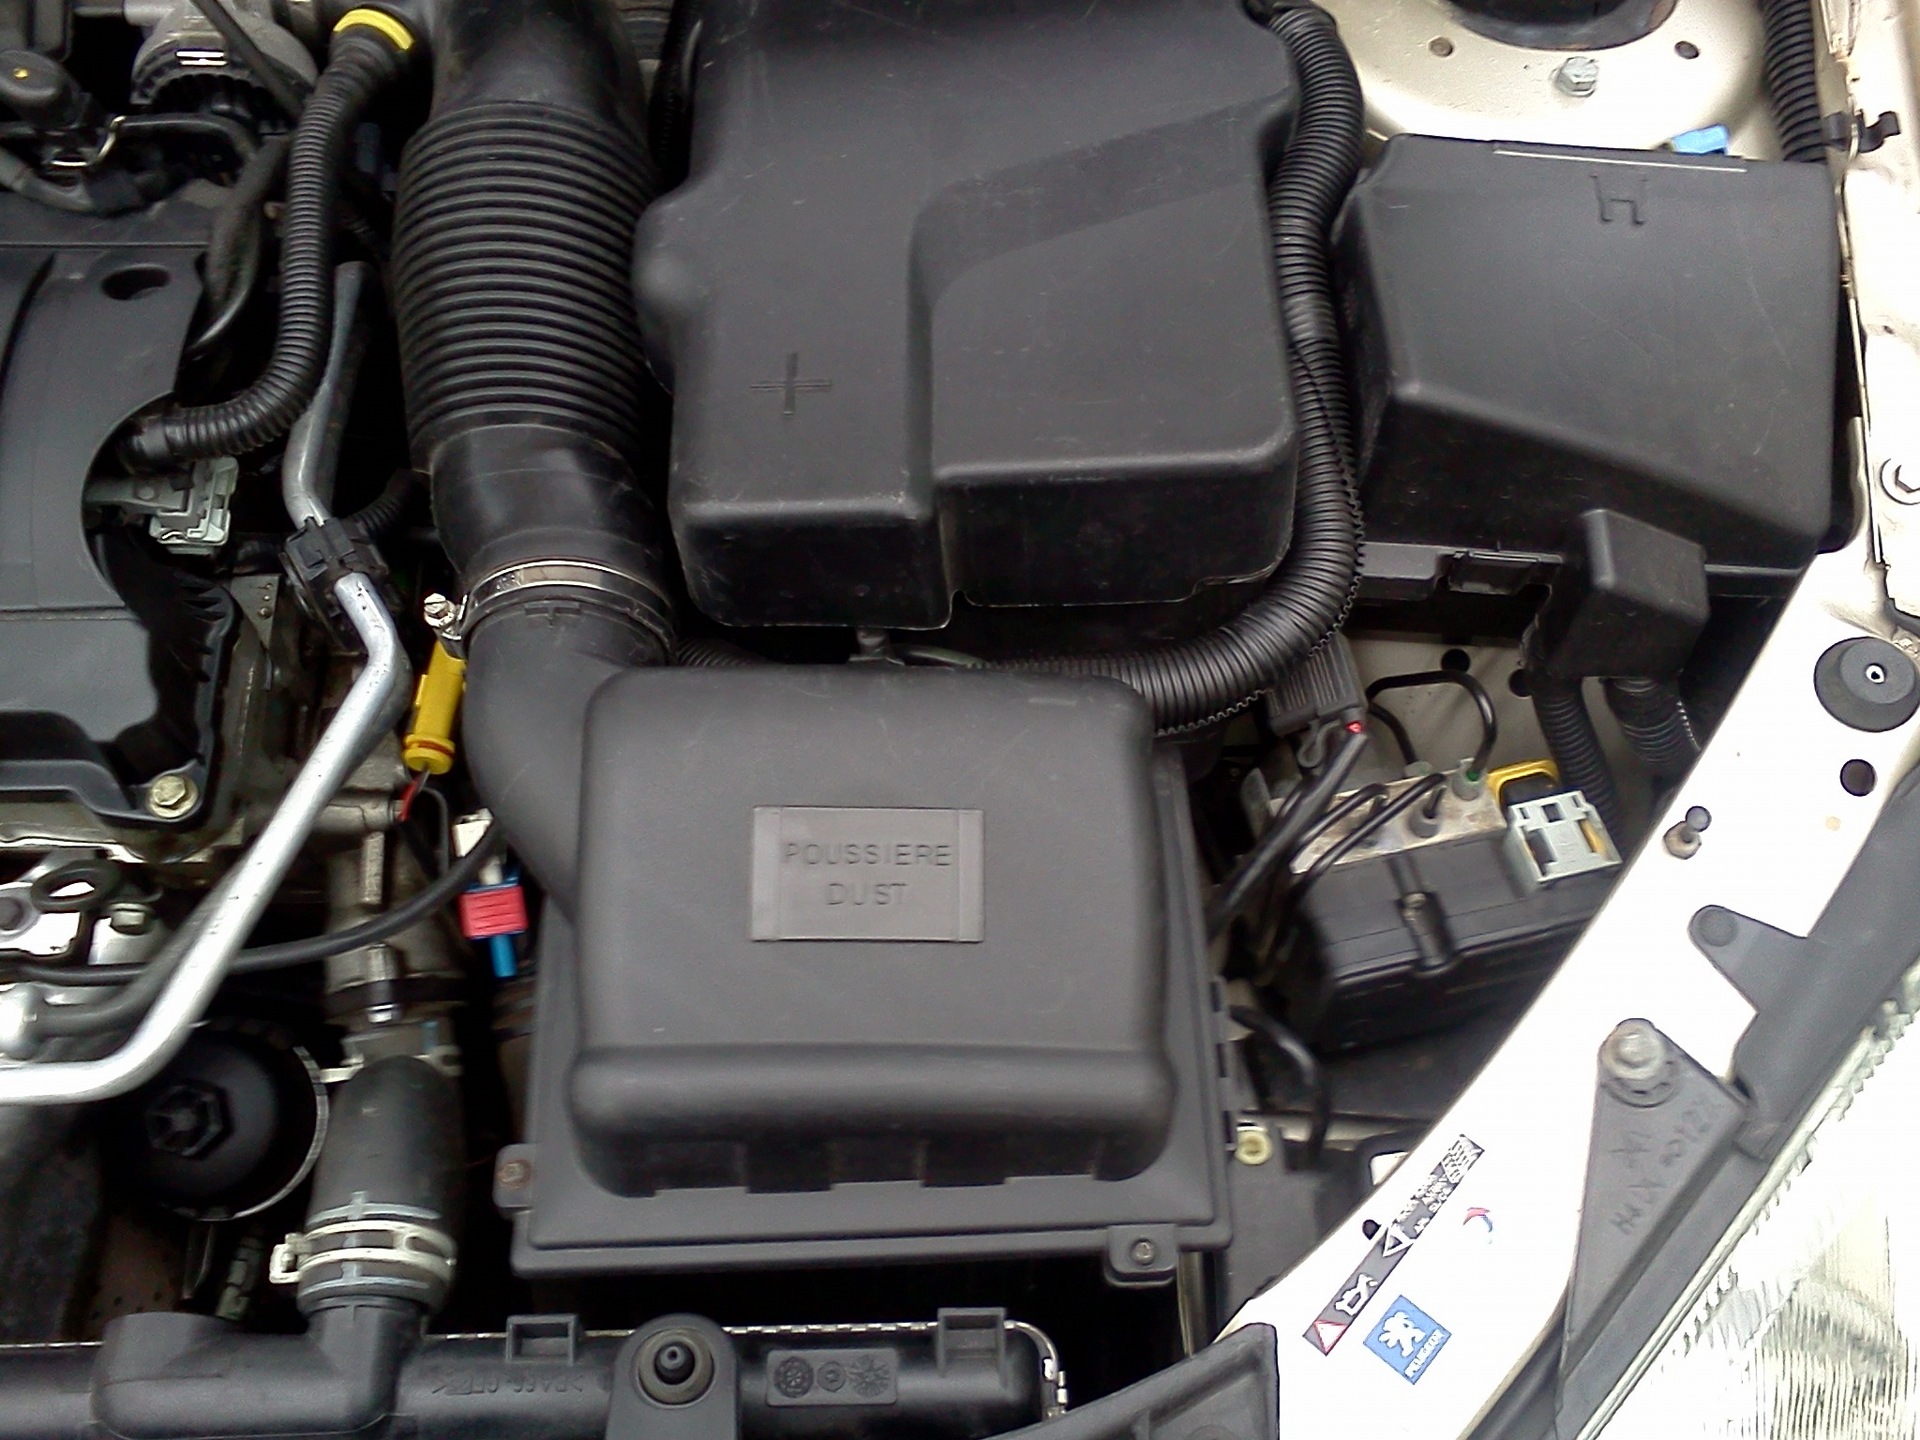 Воздушный фильтр пежо 206. Peugeot 206 воздушный фильтр. Воздушный фильтр на Пежо 206 1.4 седан. Замена воздушного фильтра Пежо 206. Воздушный фильтр Пежо 206 1.4 хэтчбек.